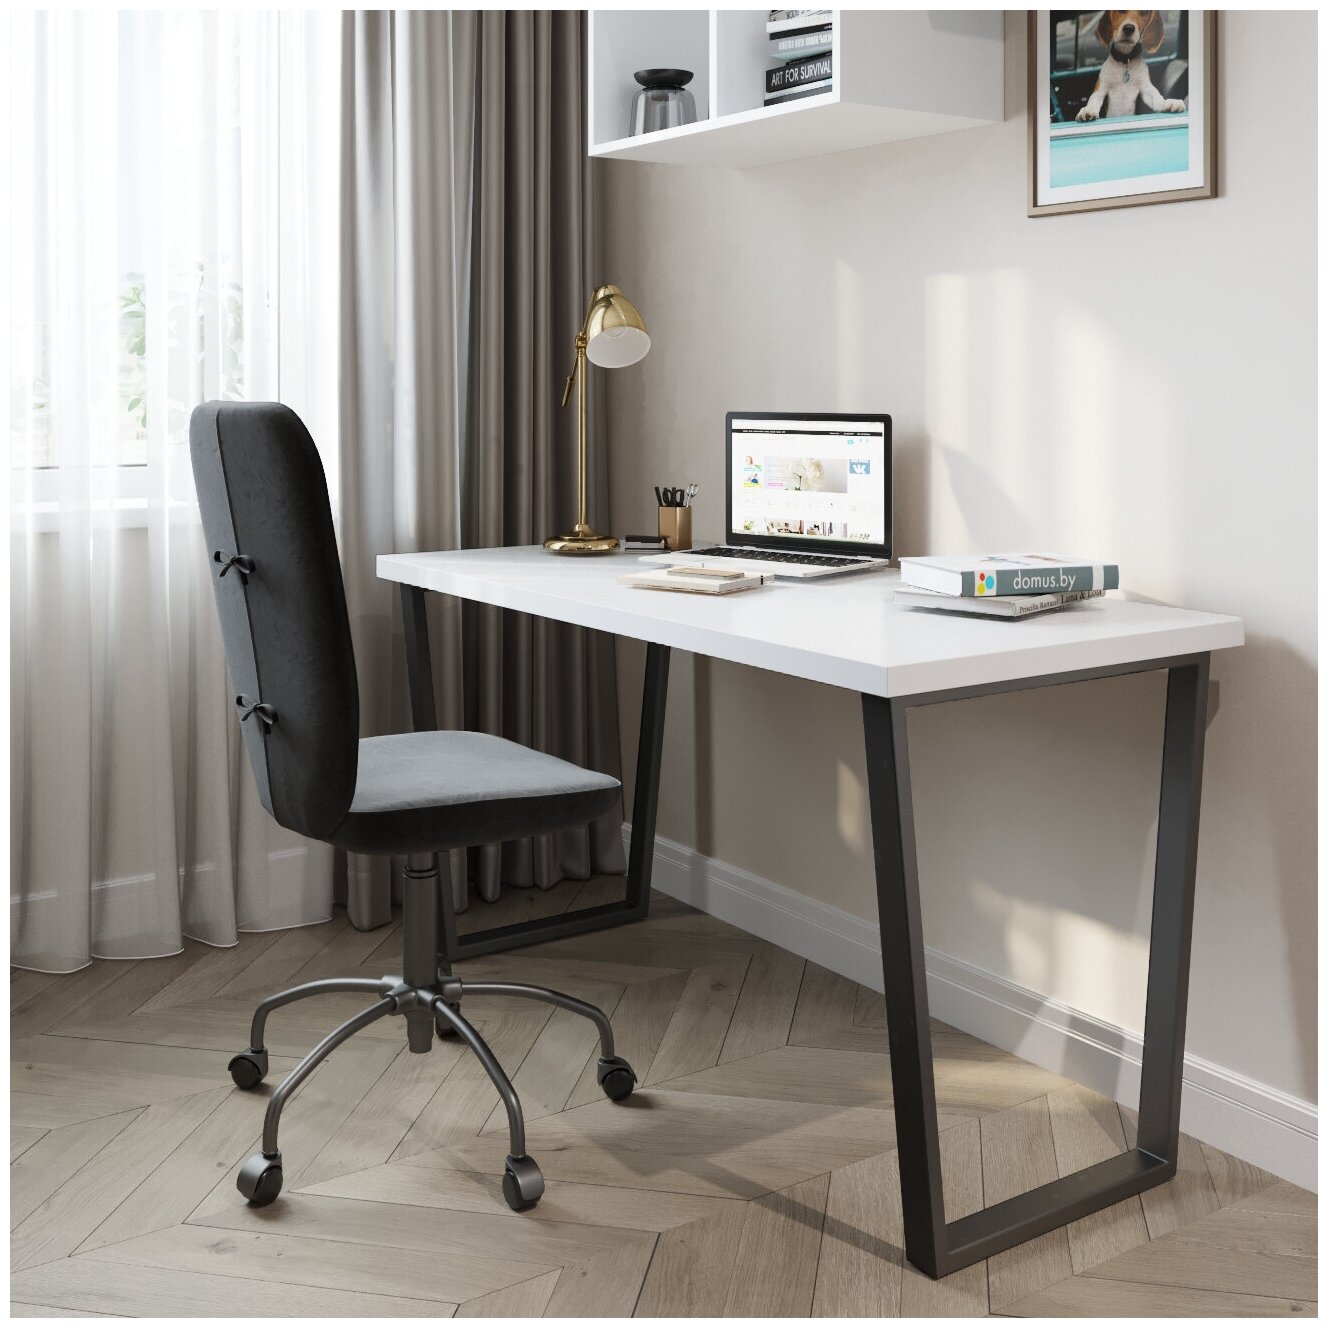 Письменный стол домус СП013 белый/металл черный (136 см)